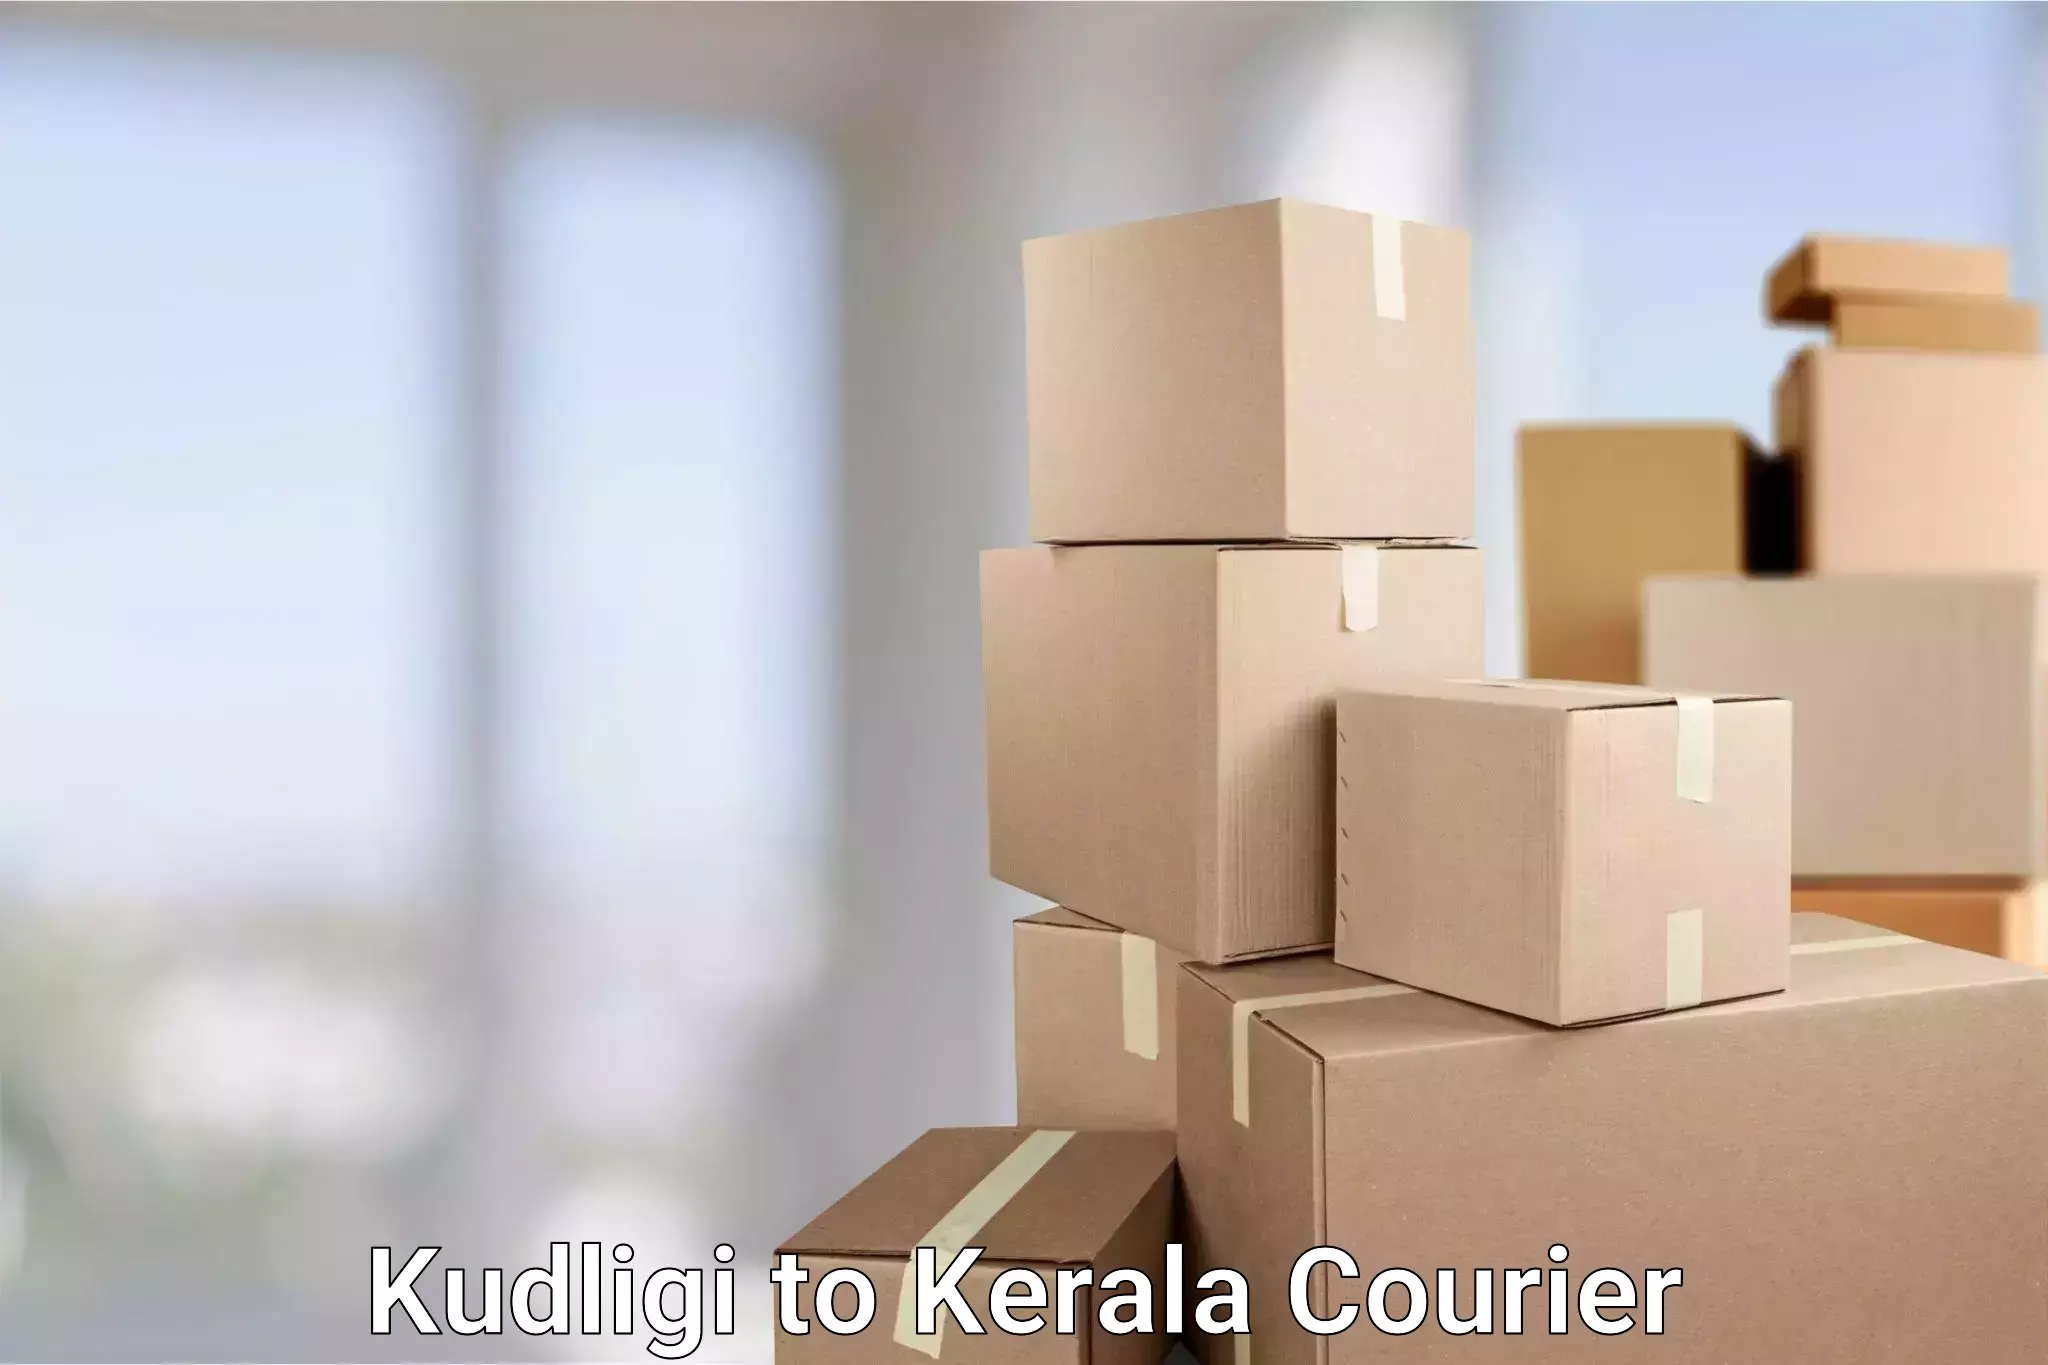 Automated parcel services Kudligi to Kerala